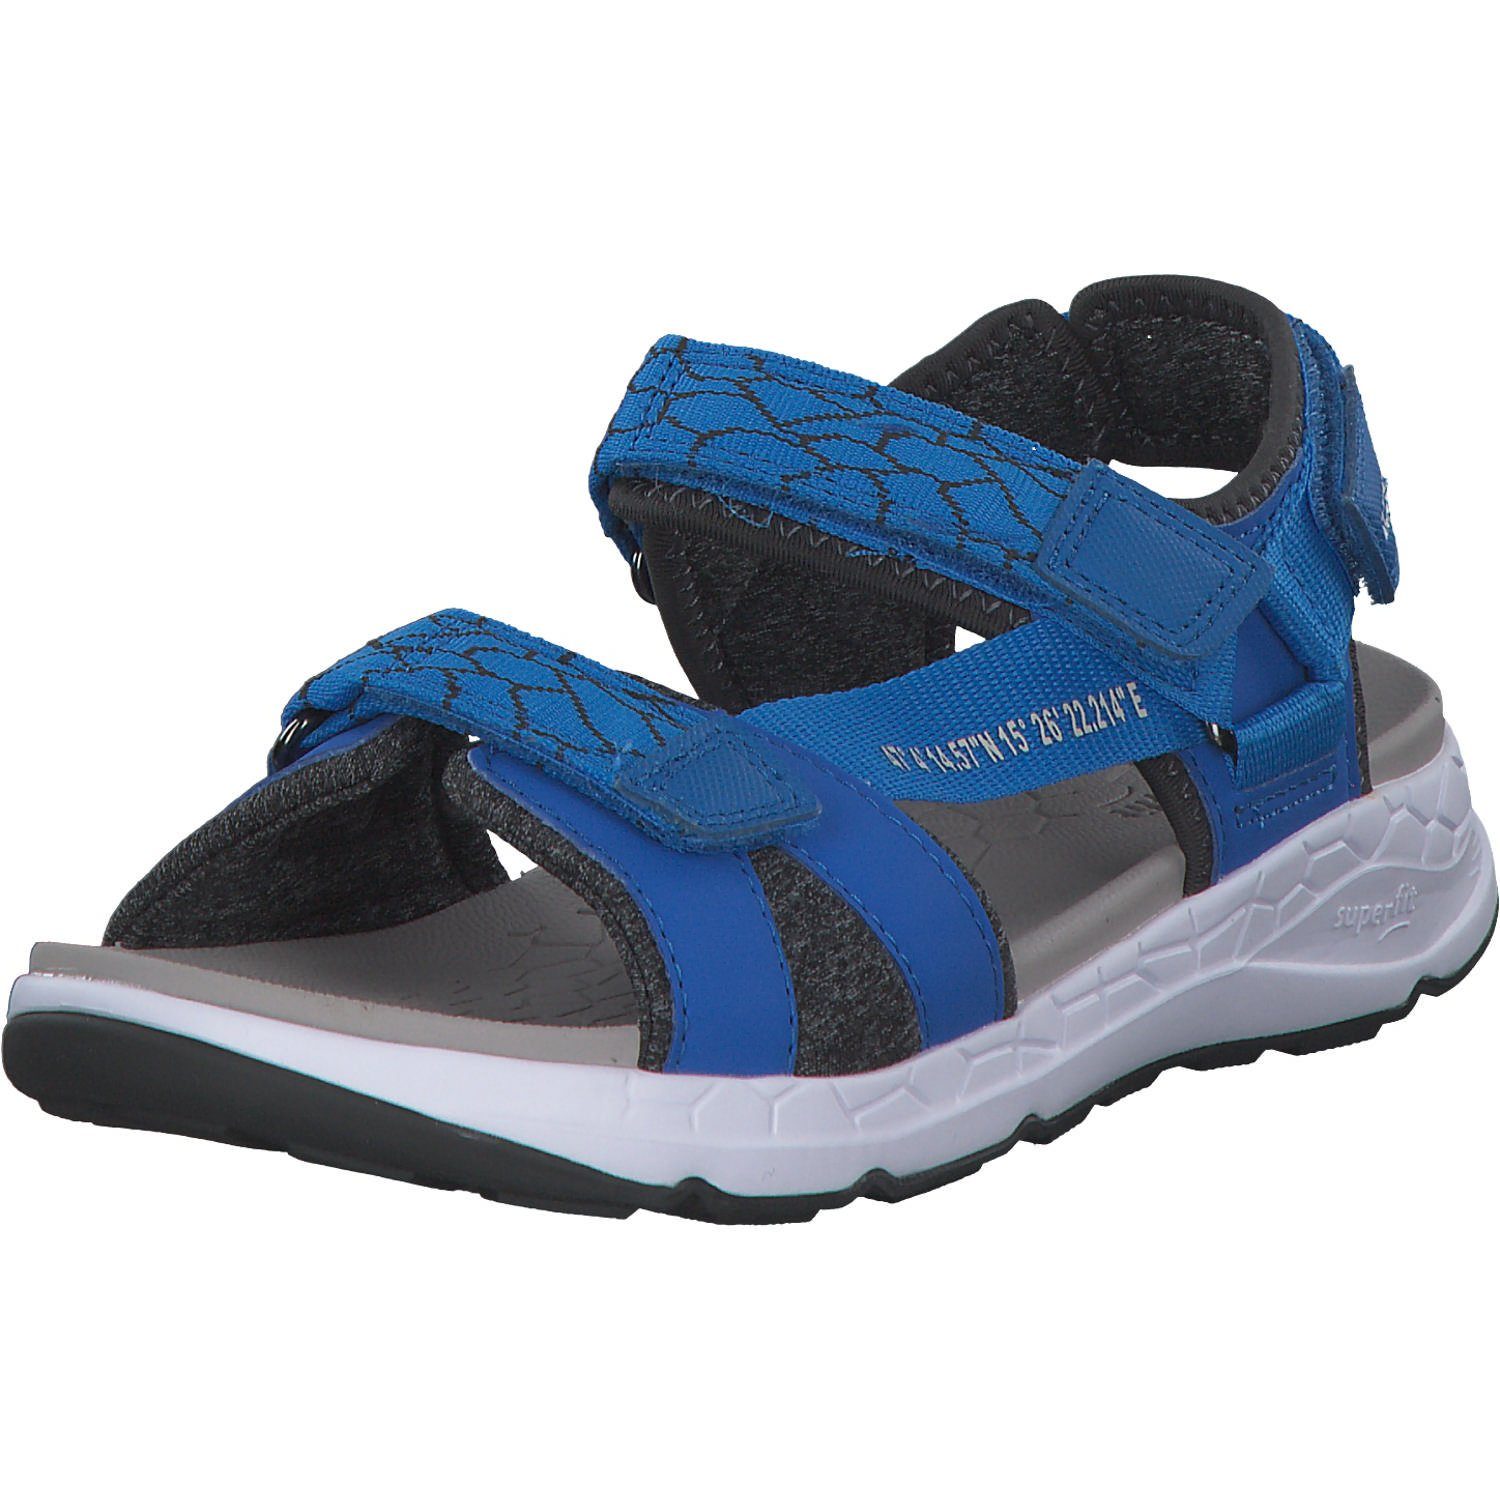 Materialien Schuhe Sandalen Synthetikkombination, hochwertige Outdoorschuh Criss Jungen Sandale Cross Superfit Qualitativ